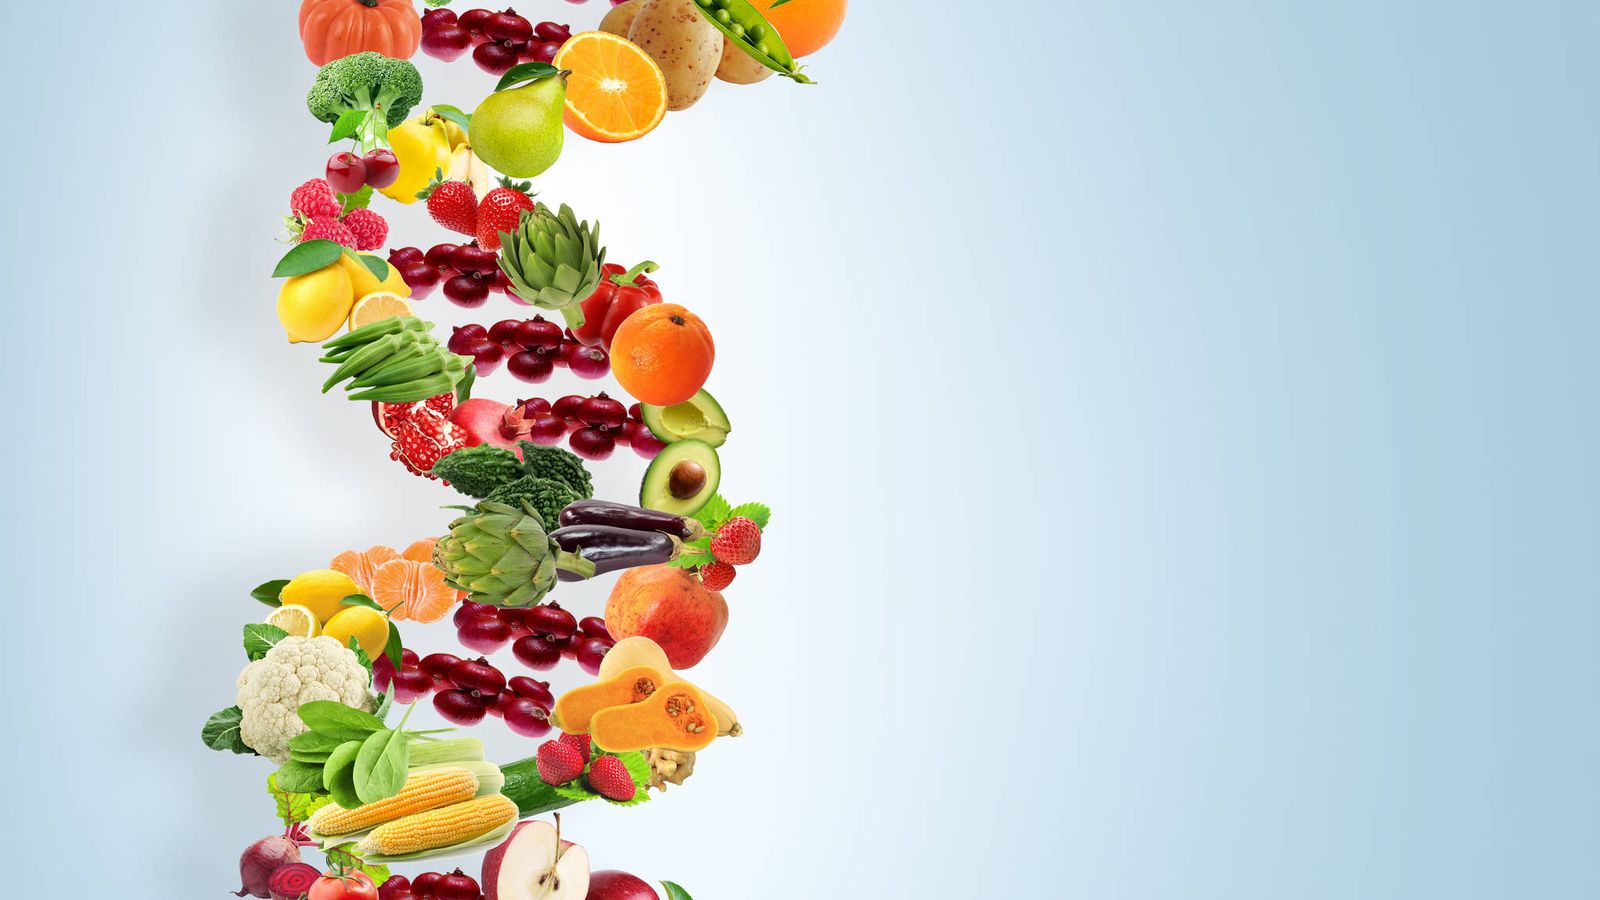 Foto: La nutrigenética nos da pistas acerca de los alimentos que nos convienen. (iStock)